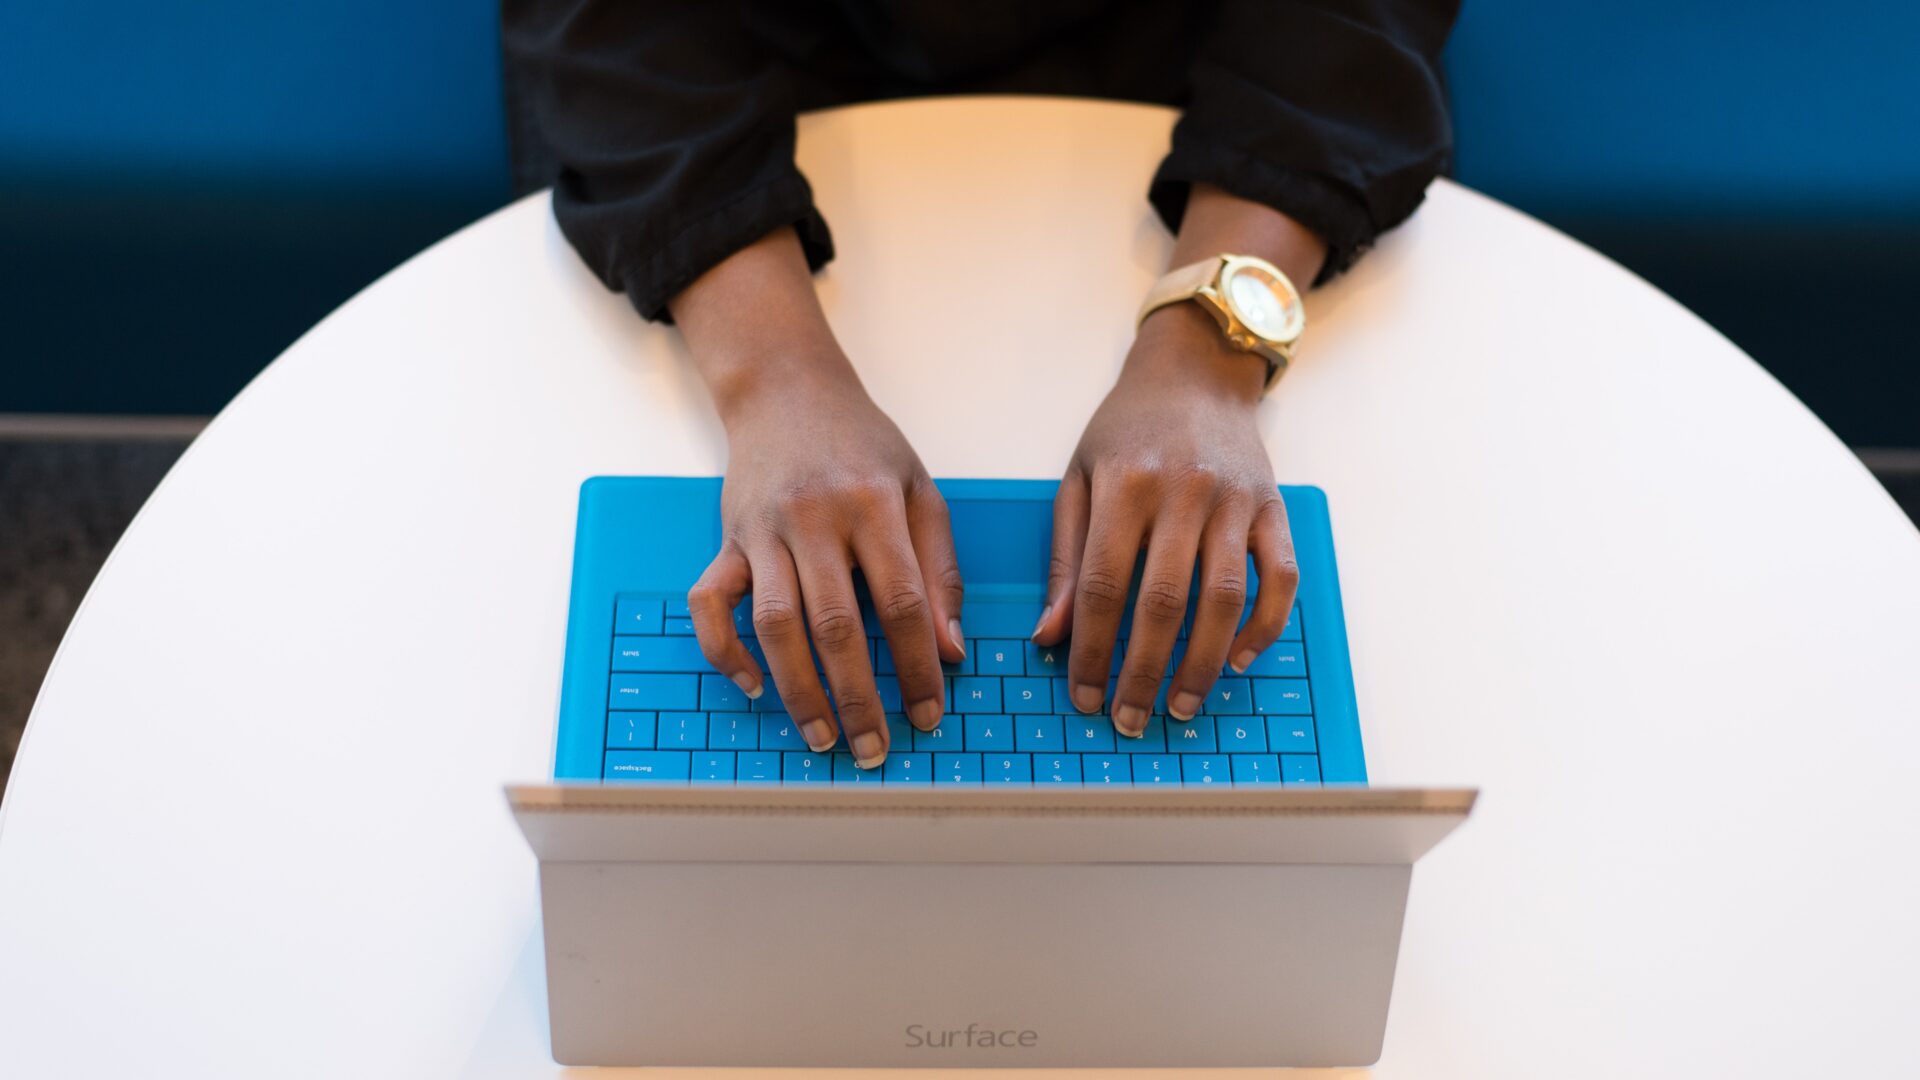 hands on blue laptop keyboard